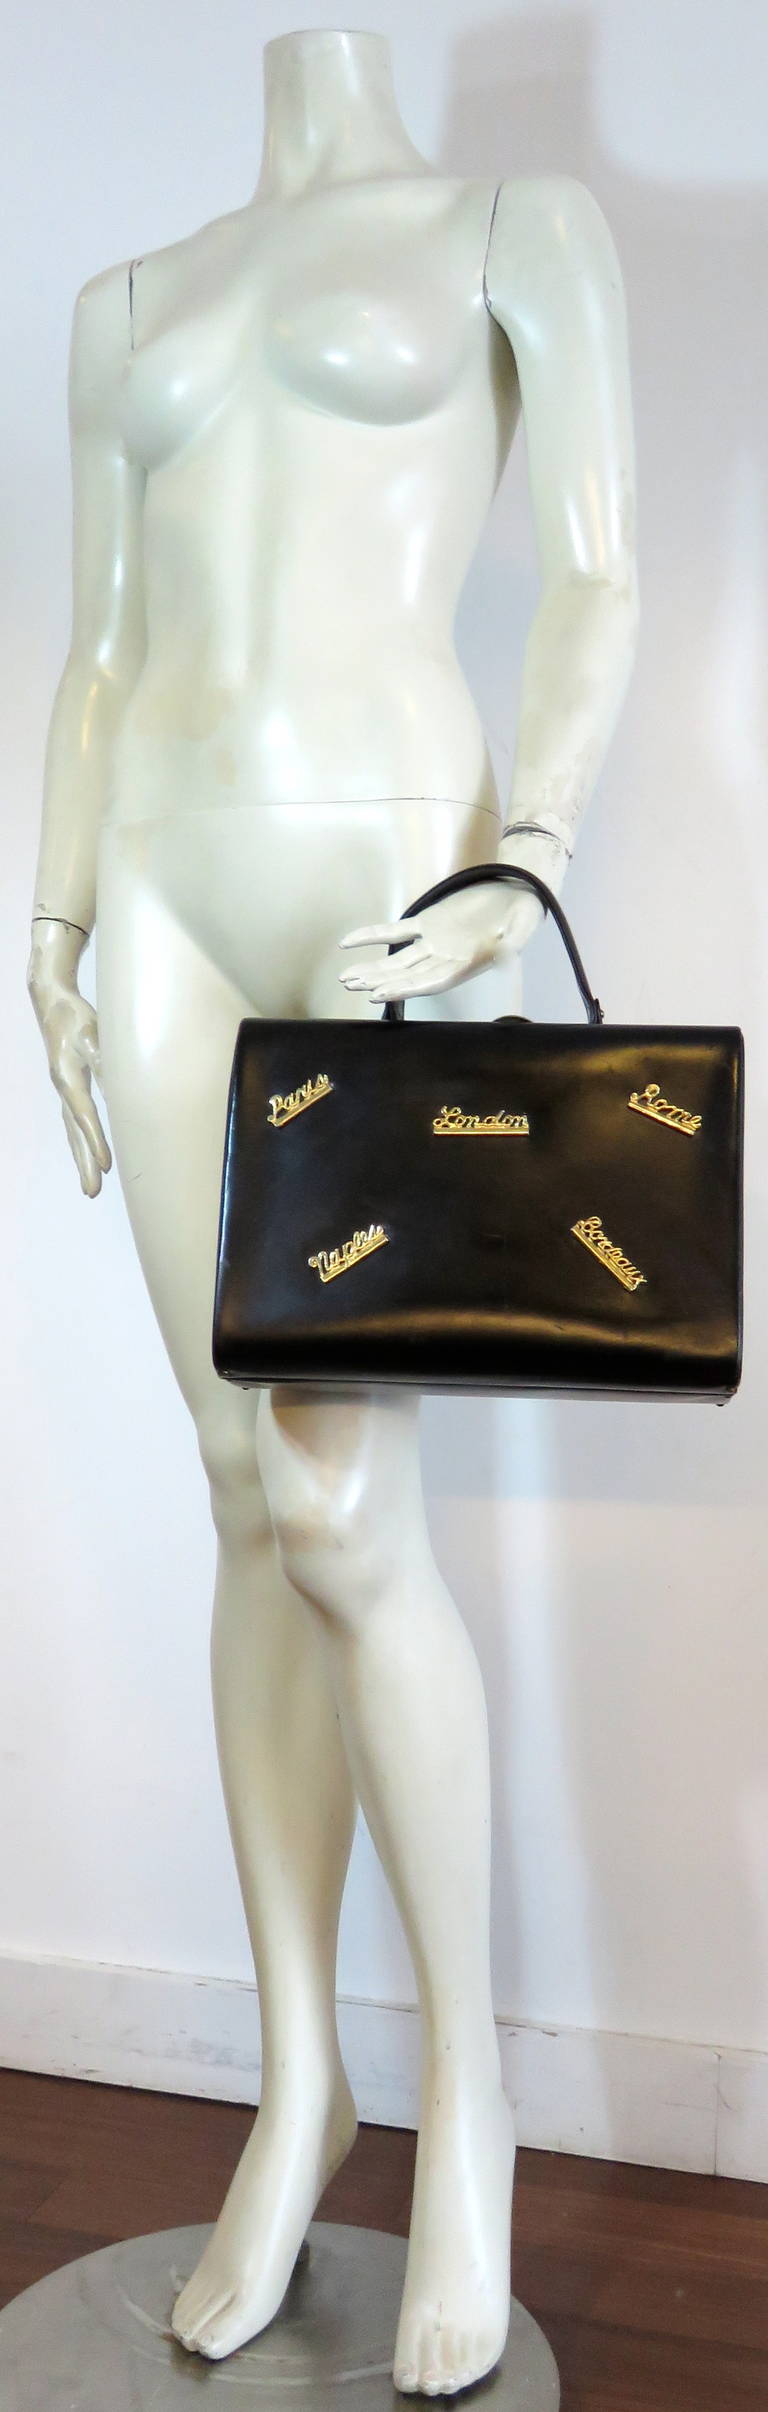 Adorable, 1950's 'Destination' black leather box travel purse.

Black leather, hard box purse featuring gold finished, metal script destination locations, 'Paris', 'London', 'Rome', 'Naples', and 'Bordeaux'.  1950's Jet-set flair.

Metal lock